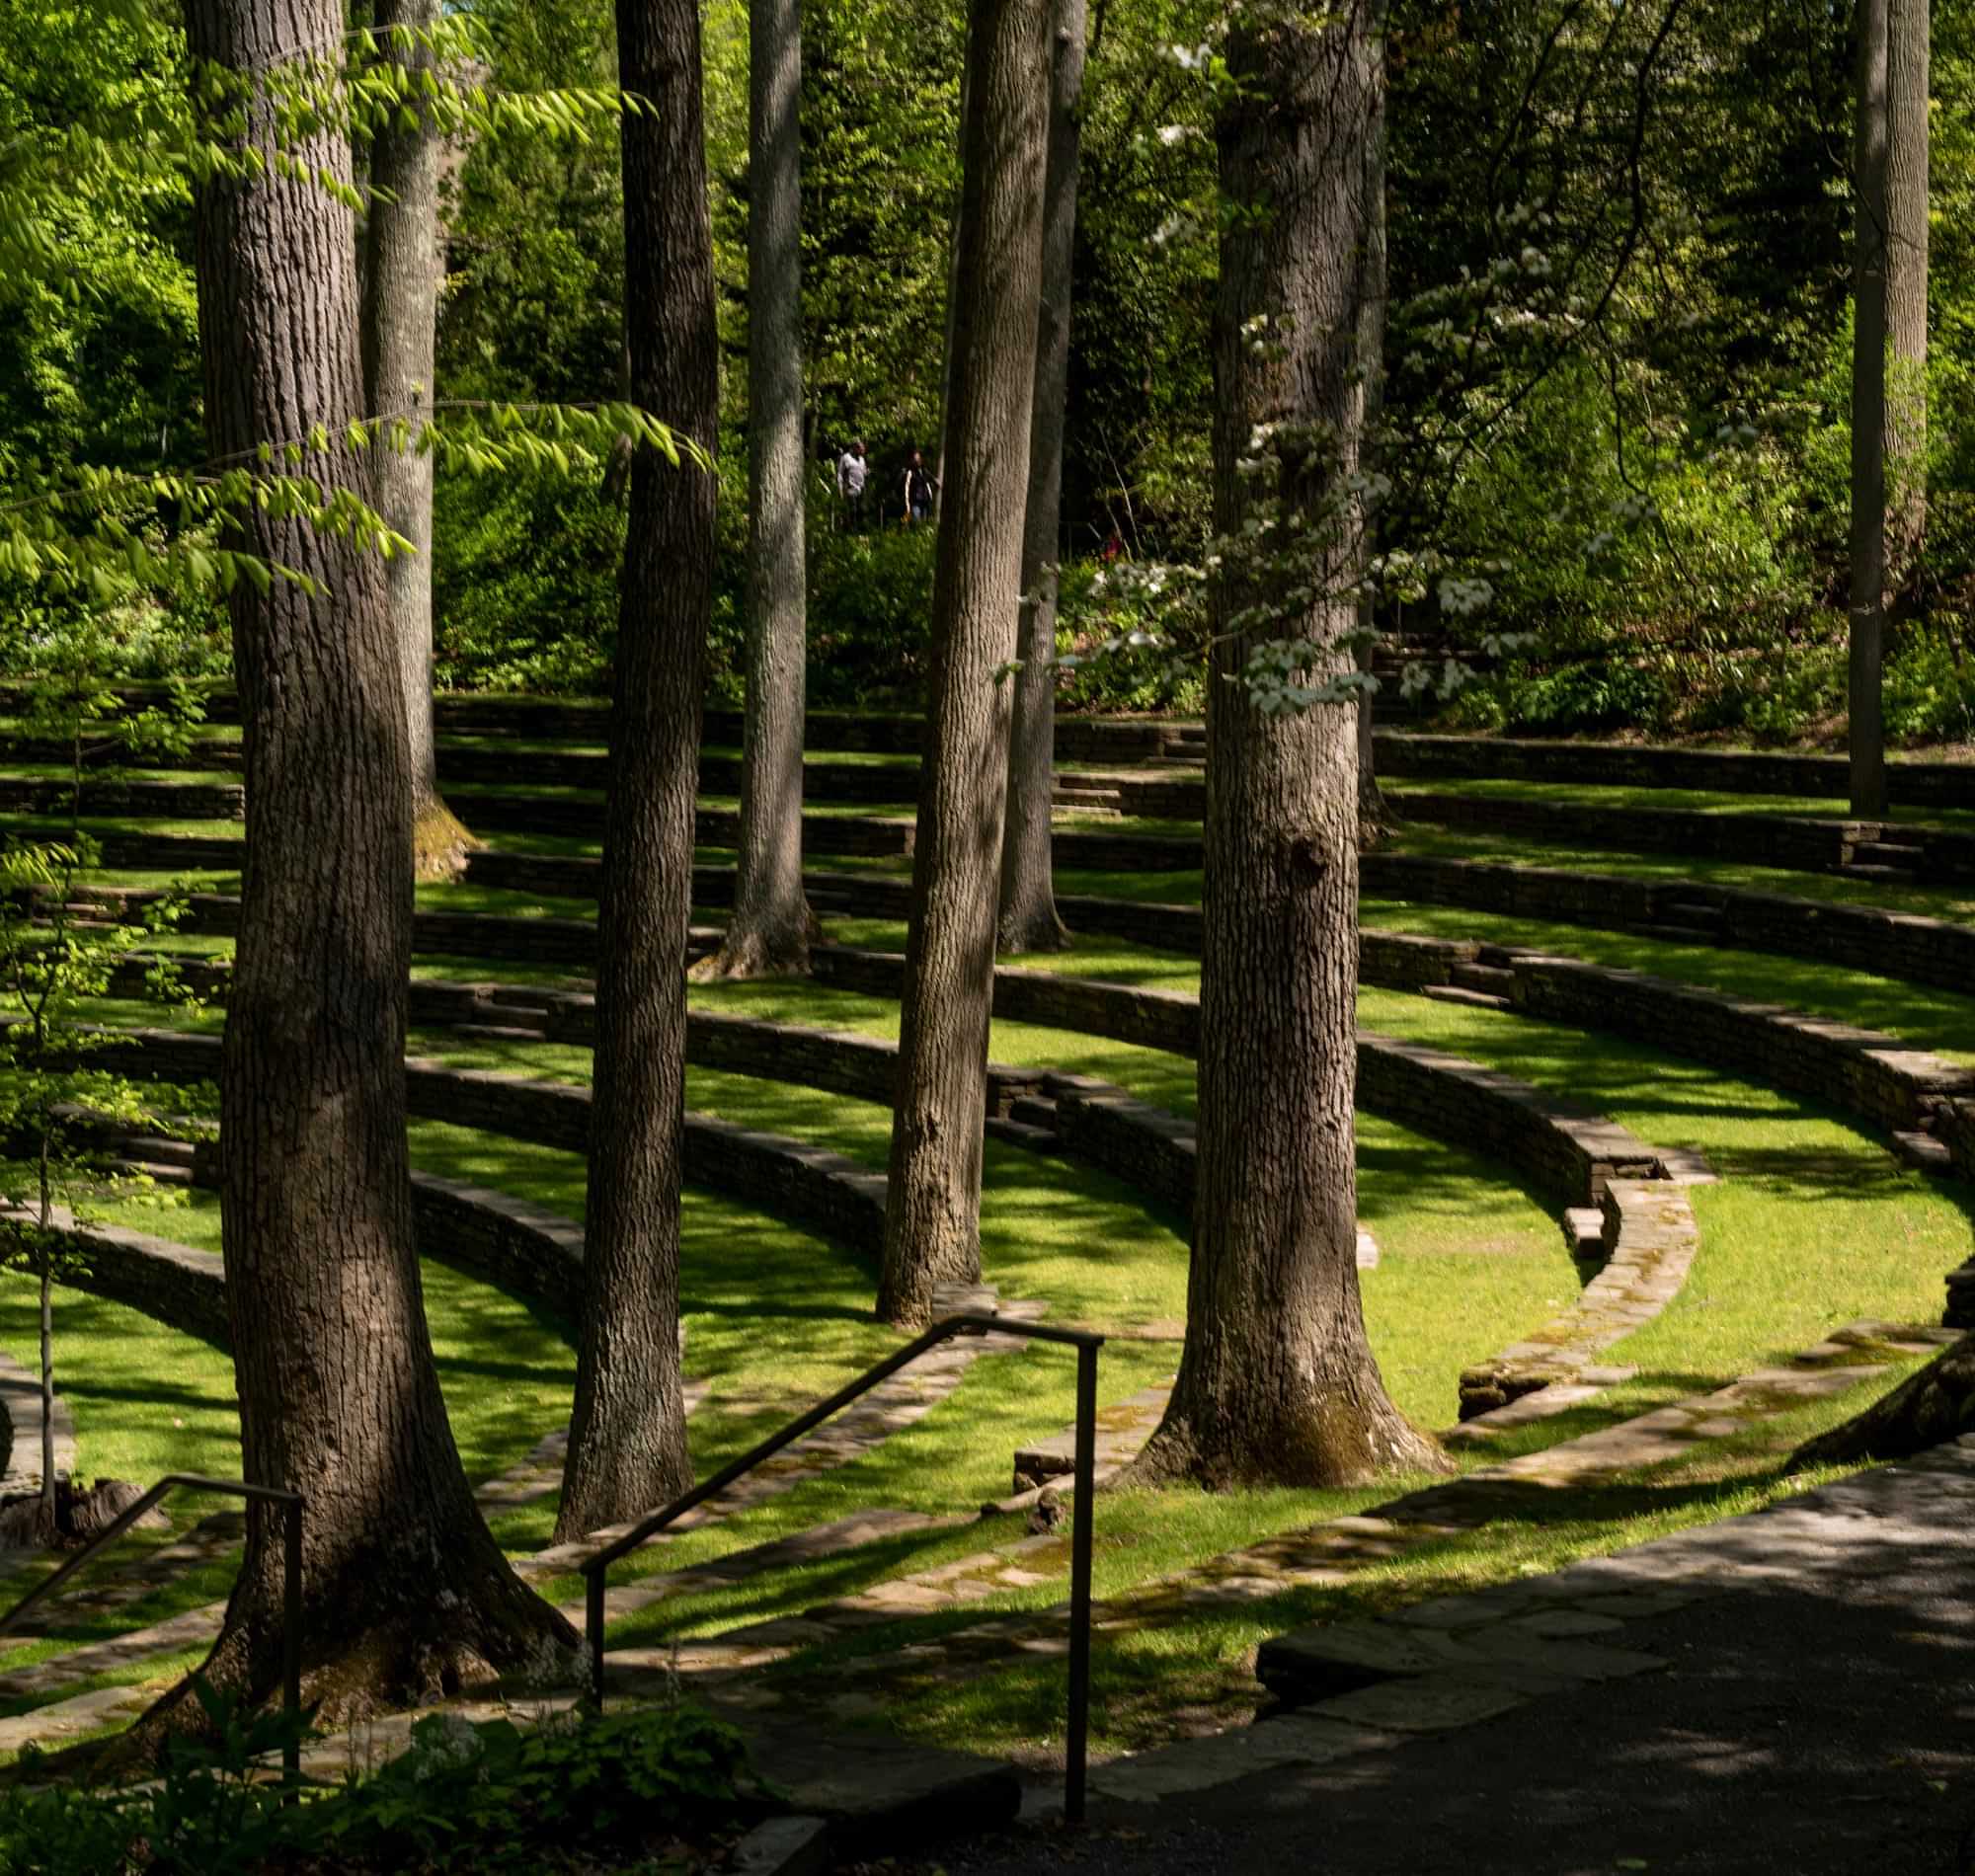 a grassy arboretum amphitheater